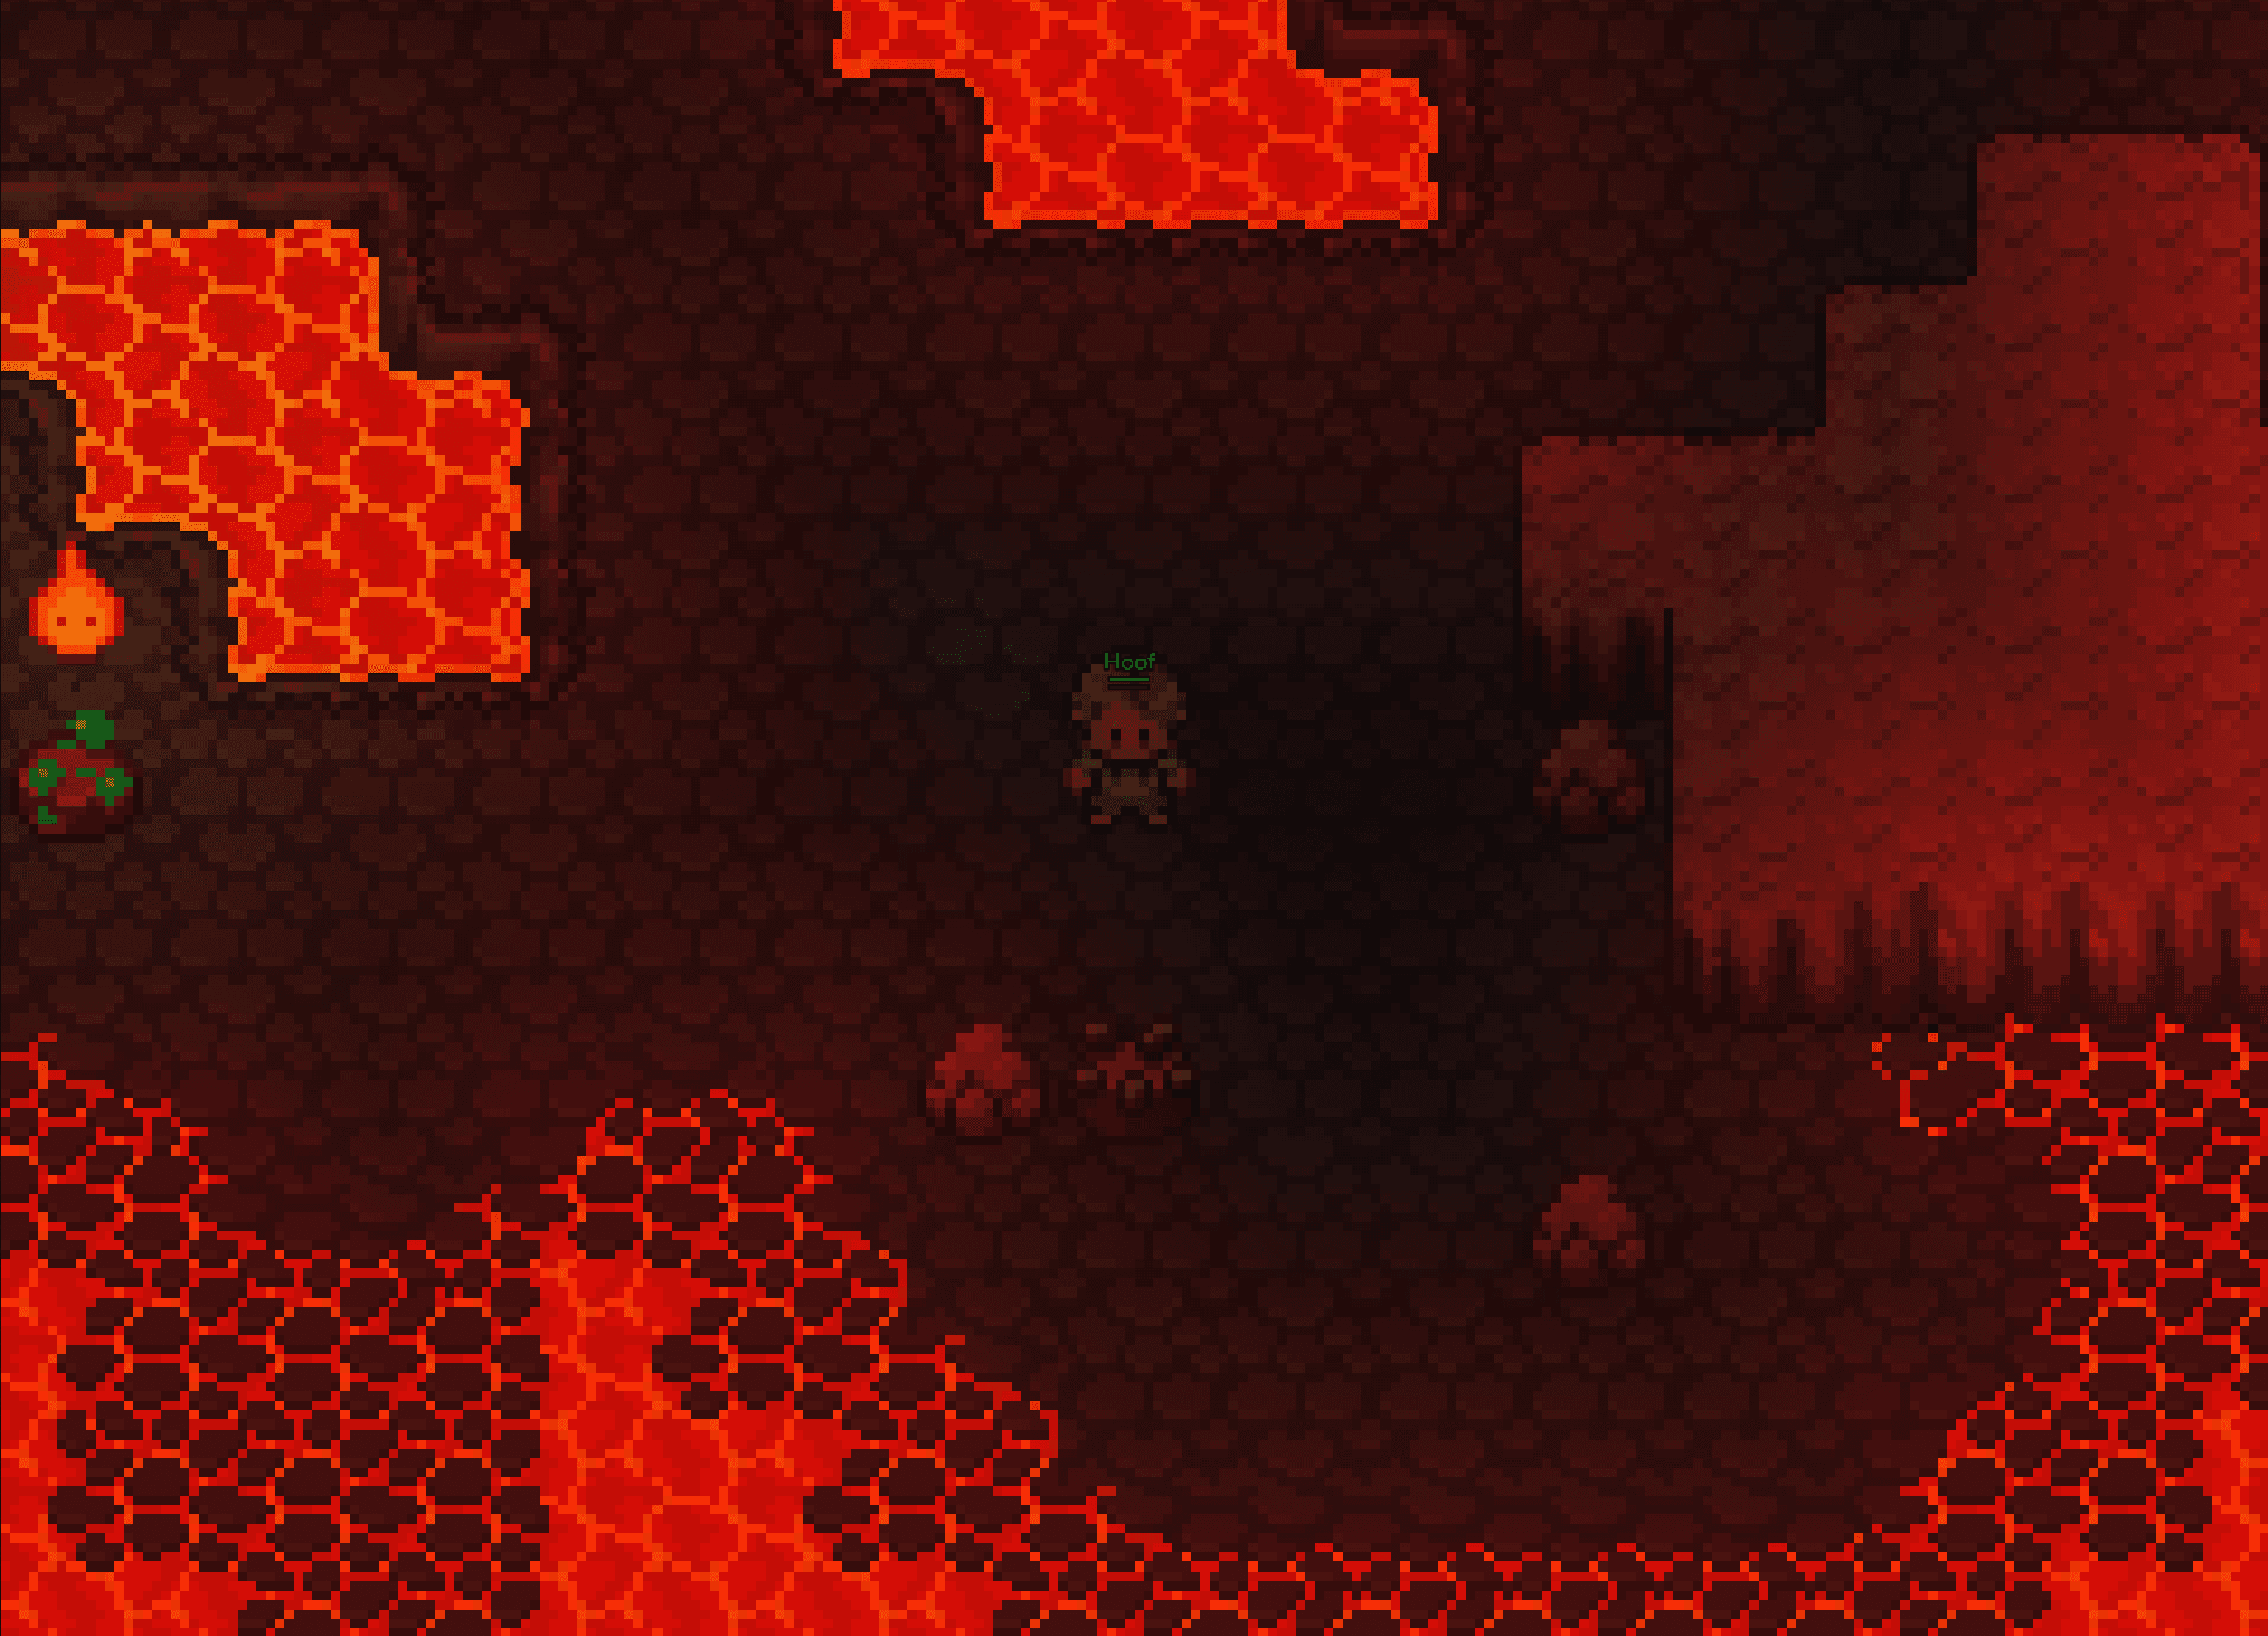 Player's character exploring a dark pixel art lava cave